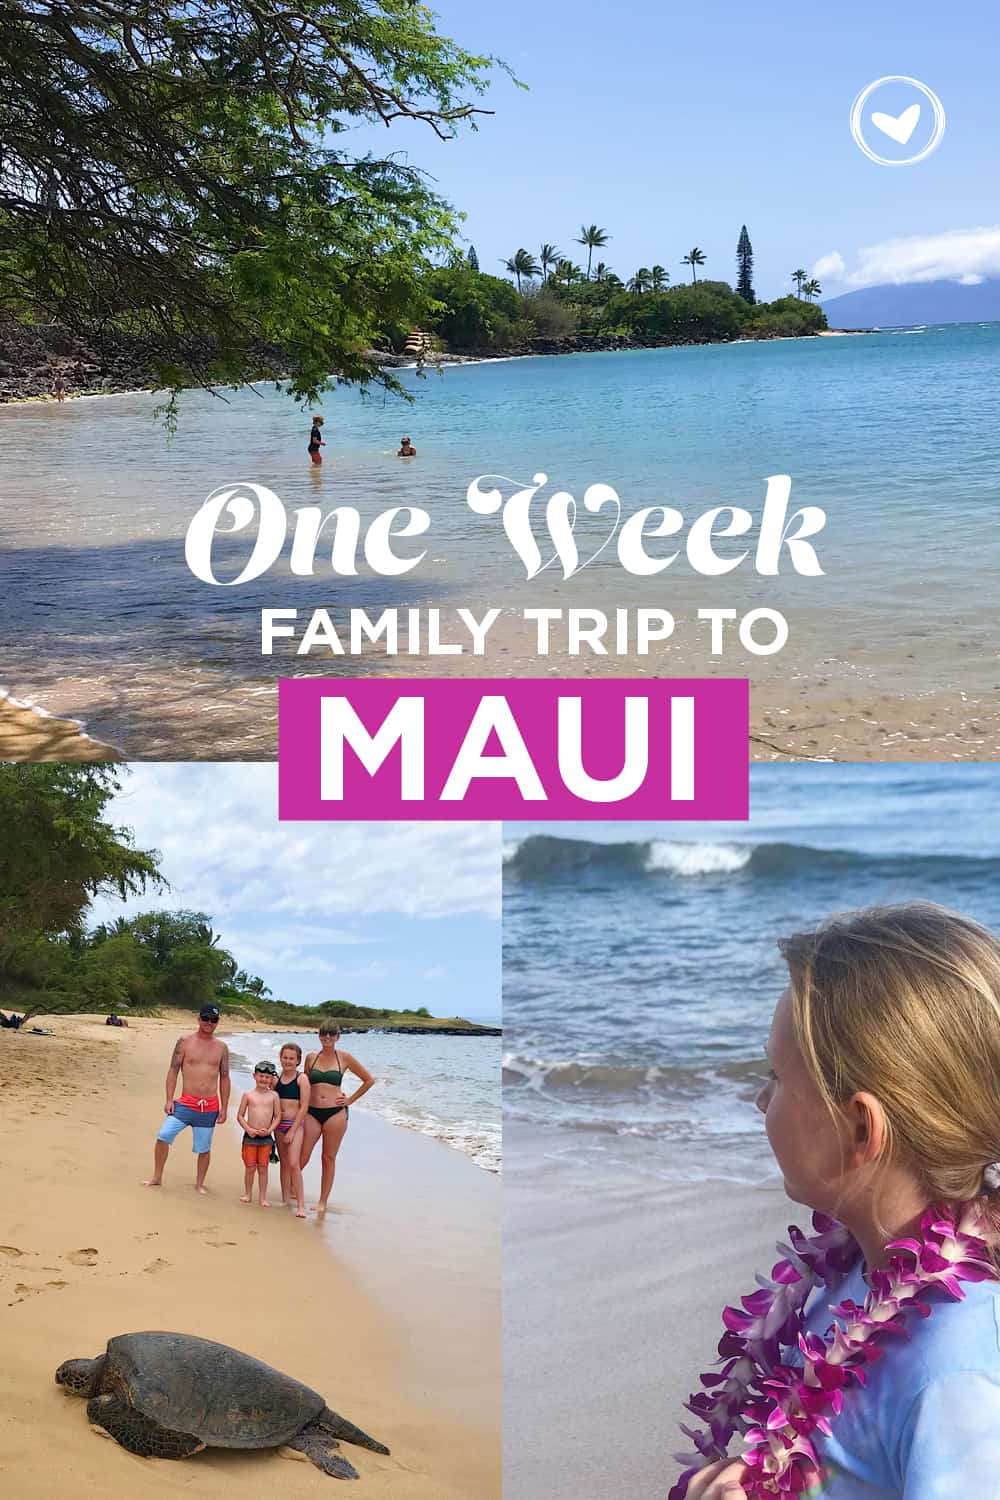 Enjoy a One Week Family Trip to Maui